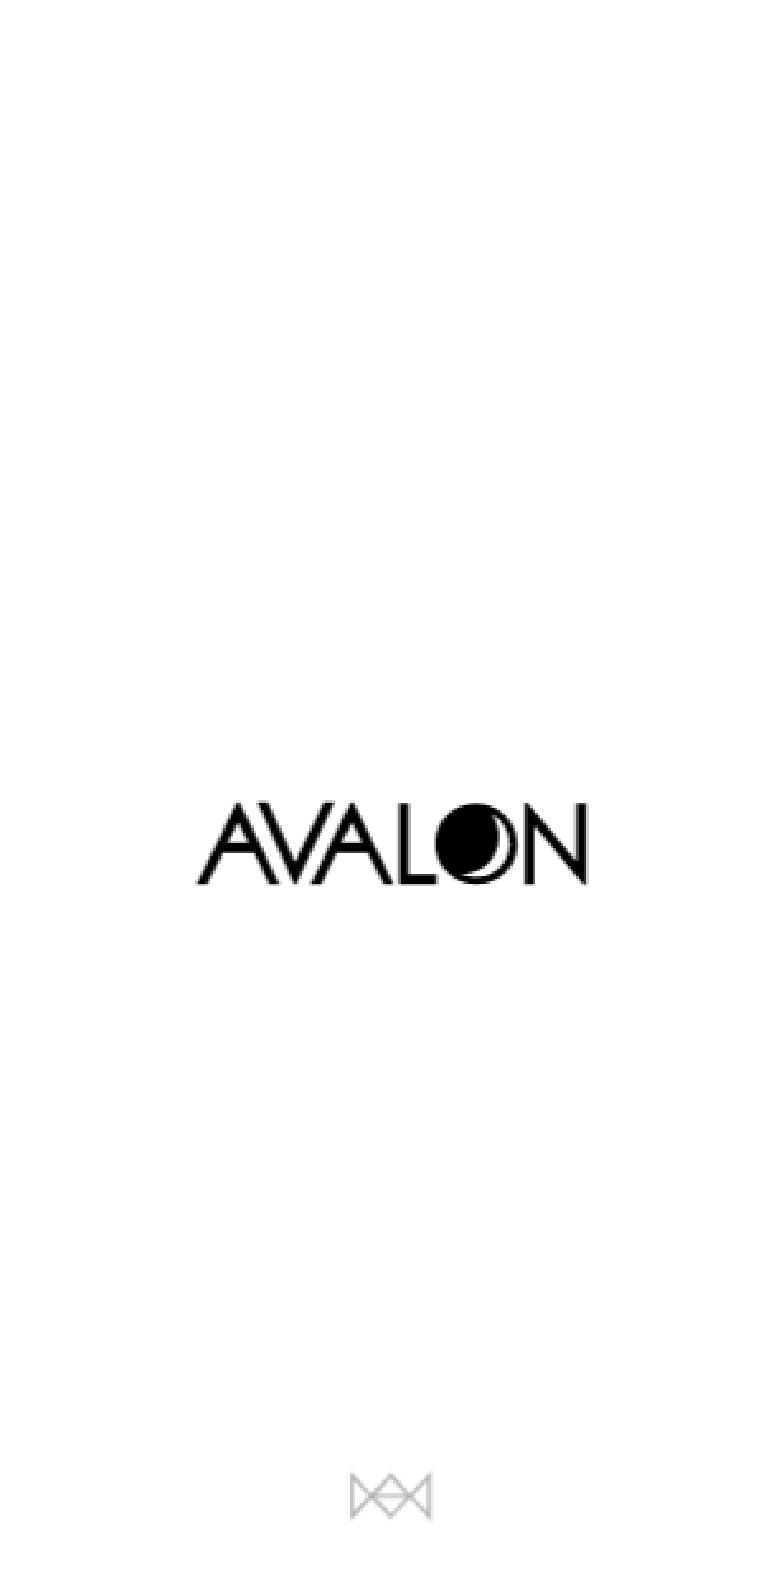 株式会社AVALONオフィシャルスマートフォンサイト